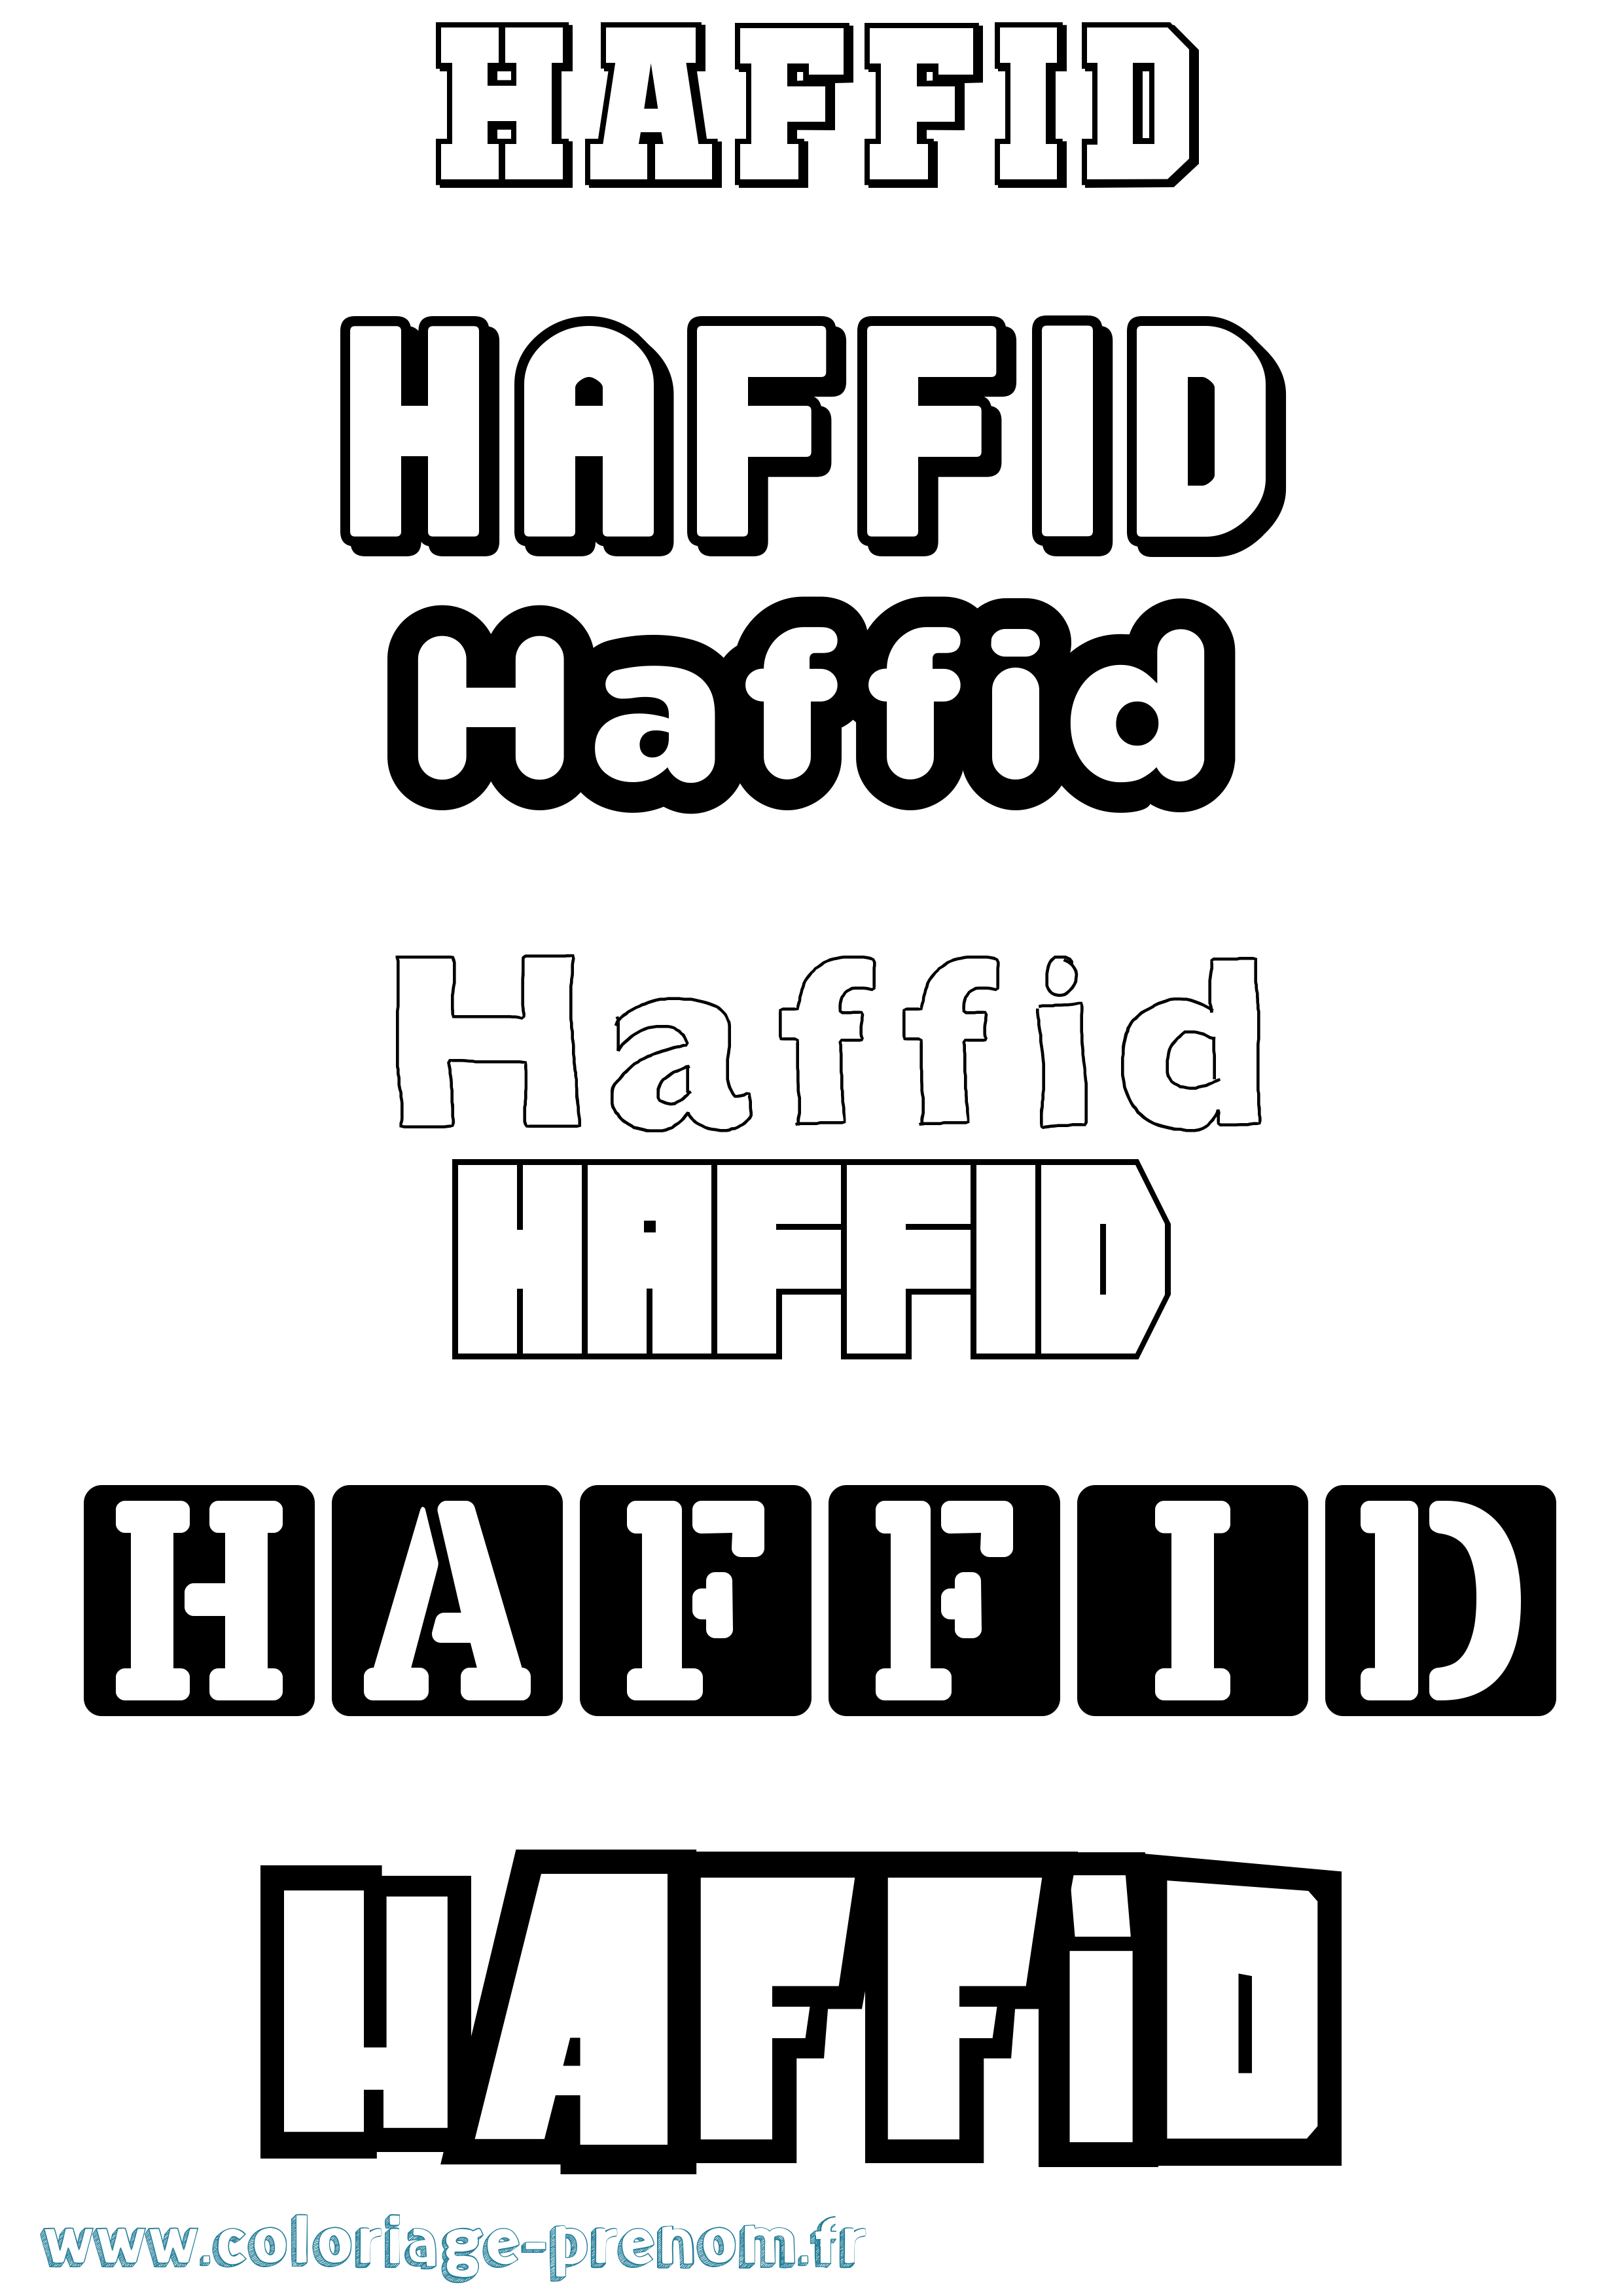 Coloriage prénom Haffid Simple